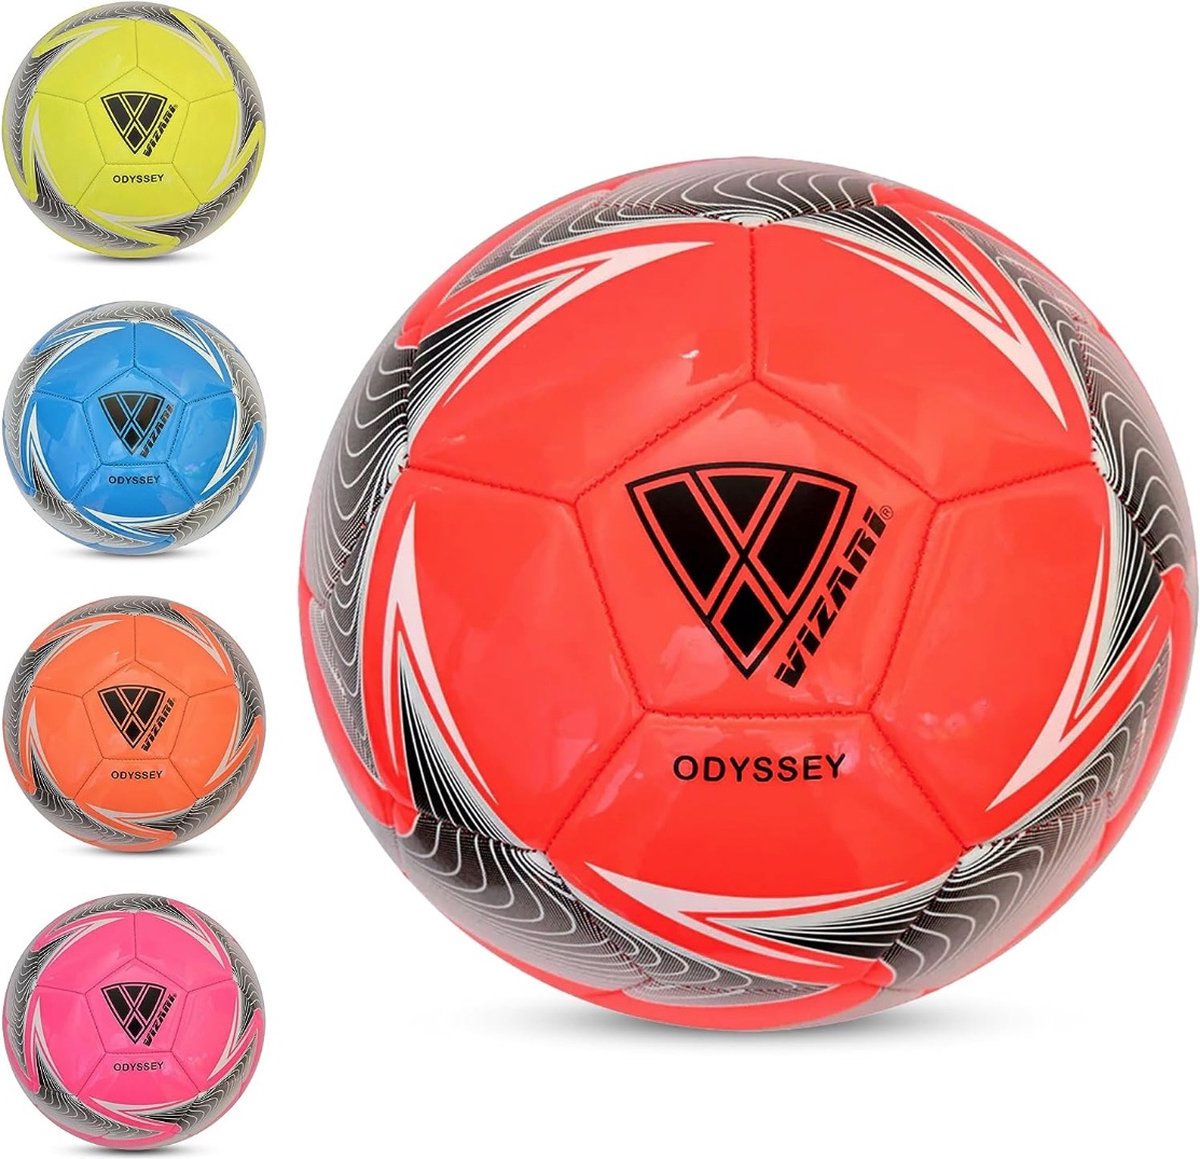 VIZARI ODYSSEY Voetbal | Rood | Maat 3 | Unieke Grafische Ontwerpen | Voetballen voor Kinderen & Volwassenen | Verkrijgbaar in 4 Kleuren